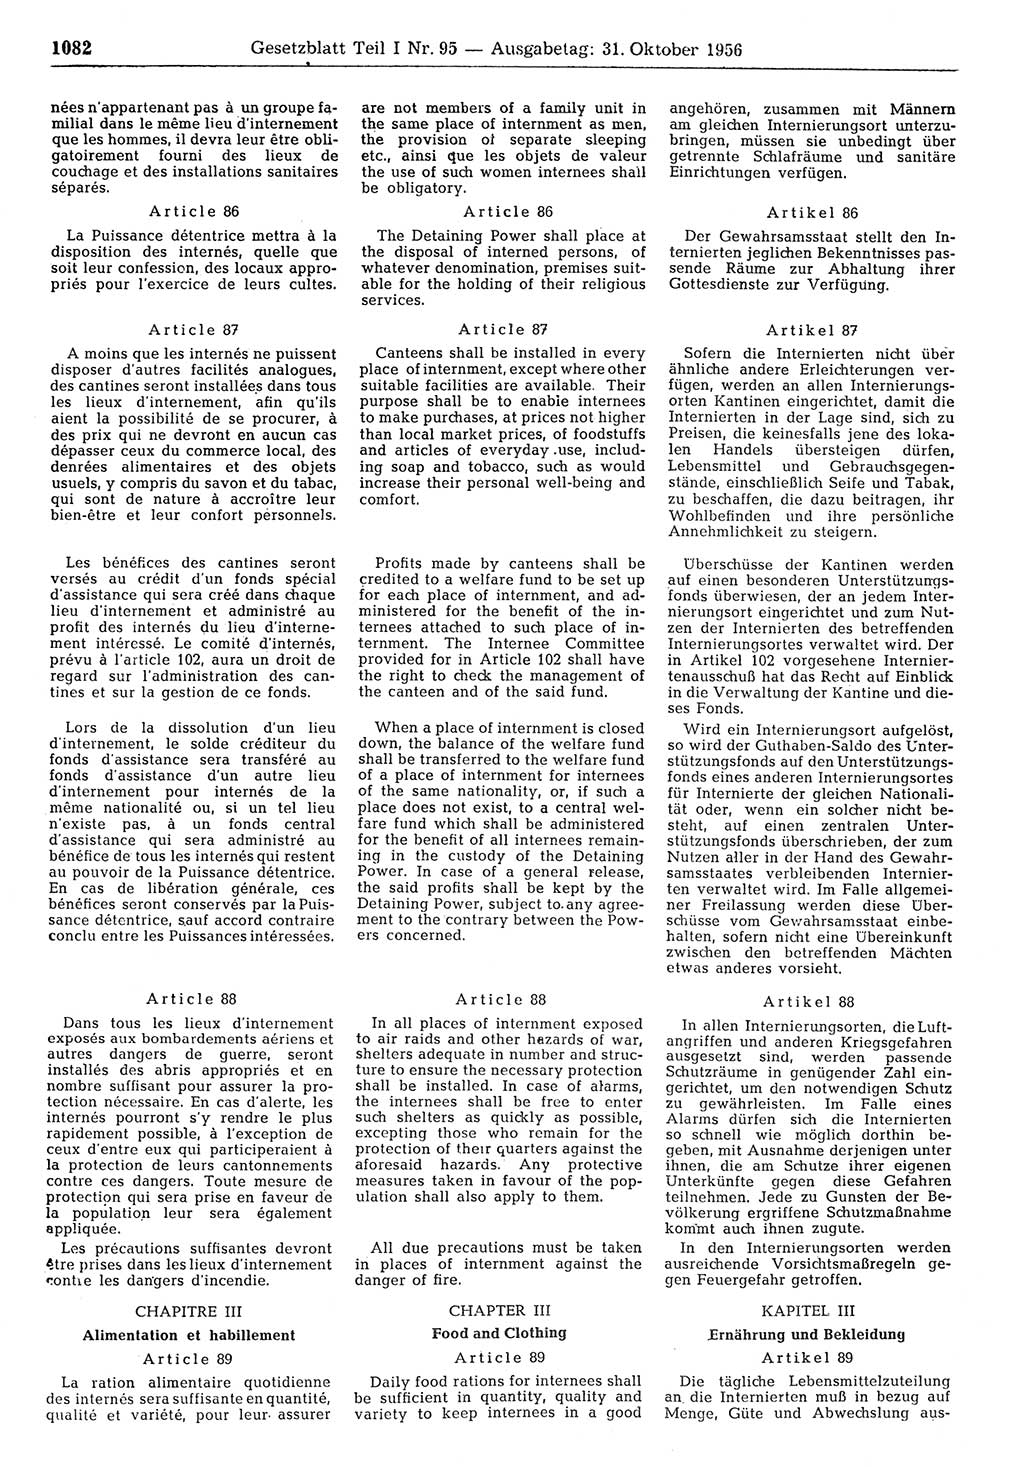 Gesetzblatt (GBl.) der Deutschen Demokratischen Republik (DDR) Teil Ⅰ 1956, Seite 1082 (GBl. DDR Ⅰ 1956, S. 1082)